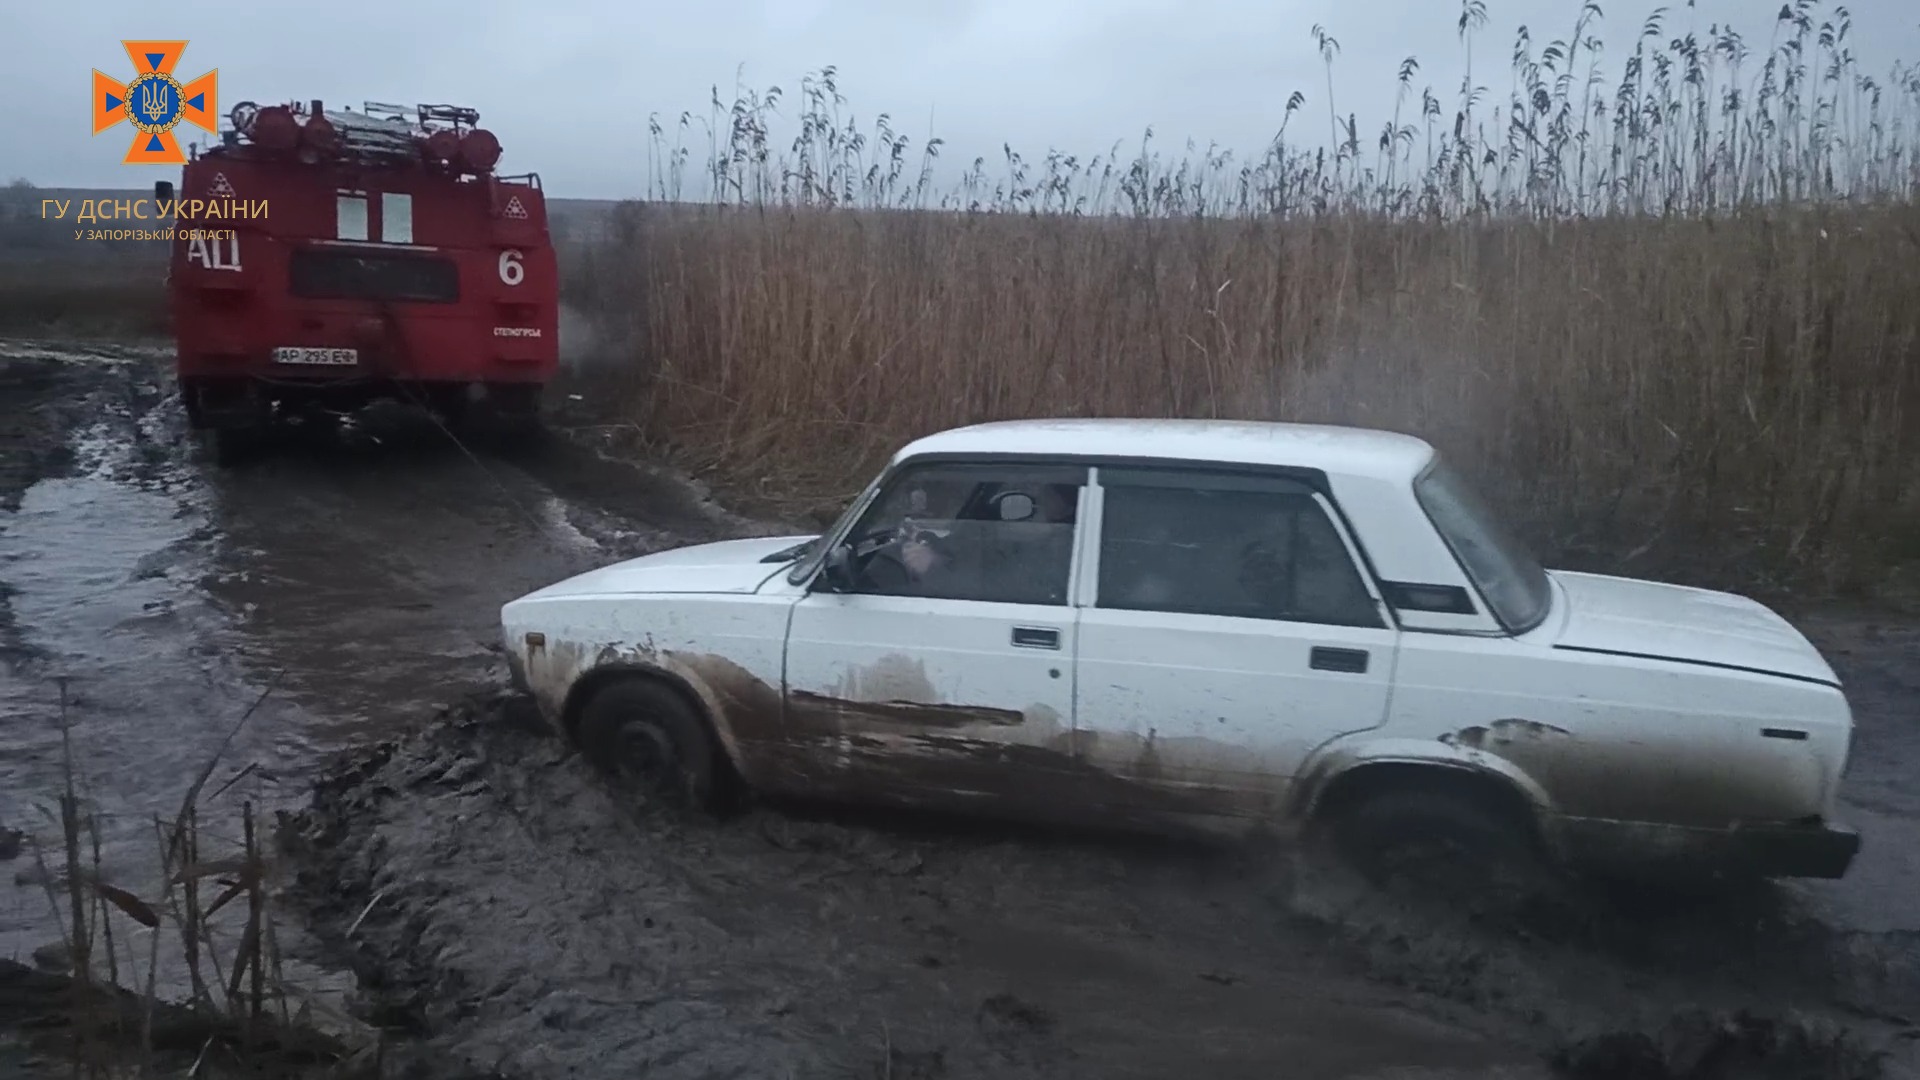 Спасатели вытащили 4 застрявших автомобиля в Запорожской области. ФОТО